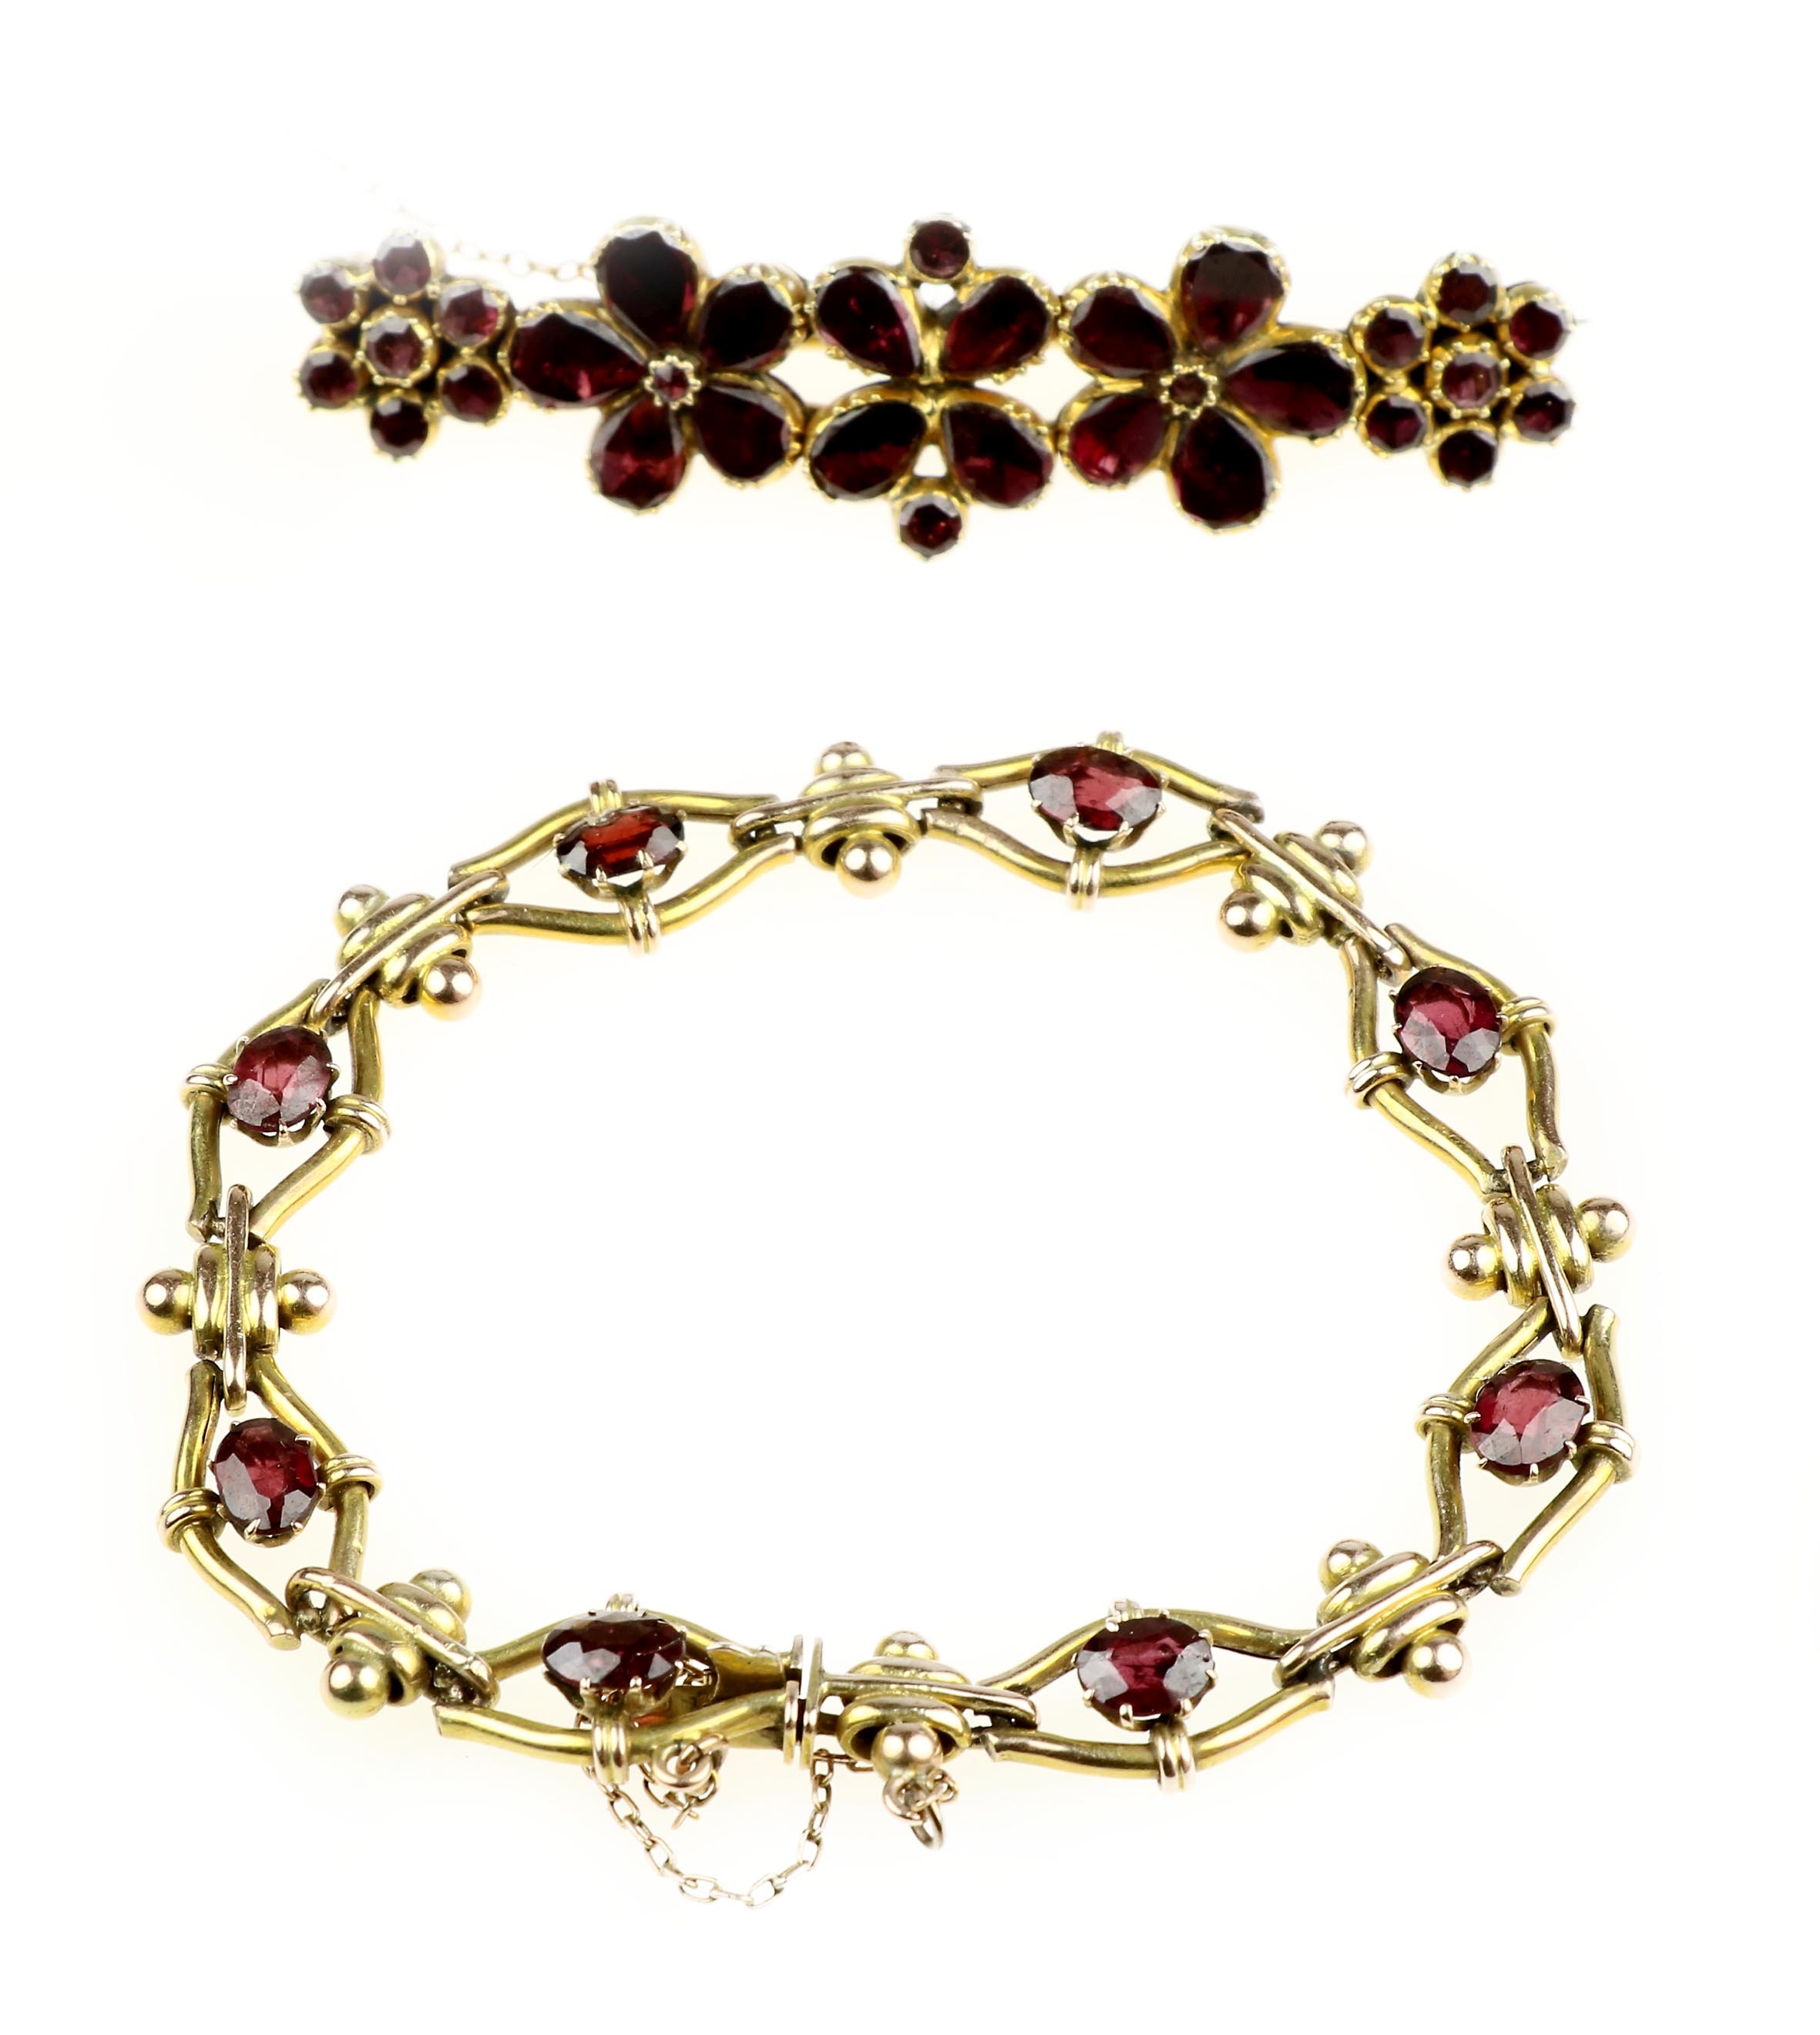 A garnet brooch and bracelet - Image 2 of 2